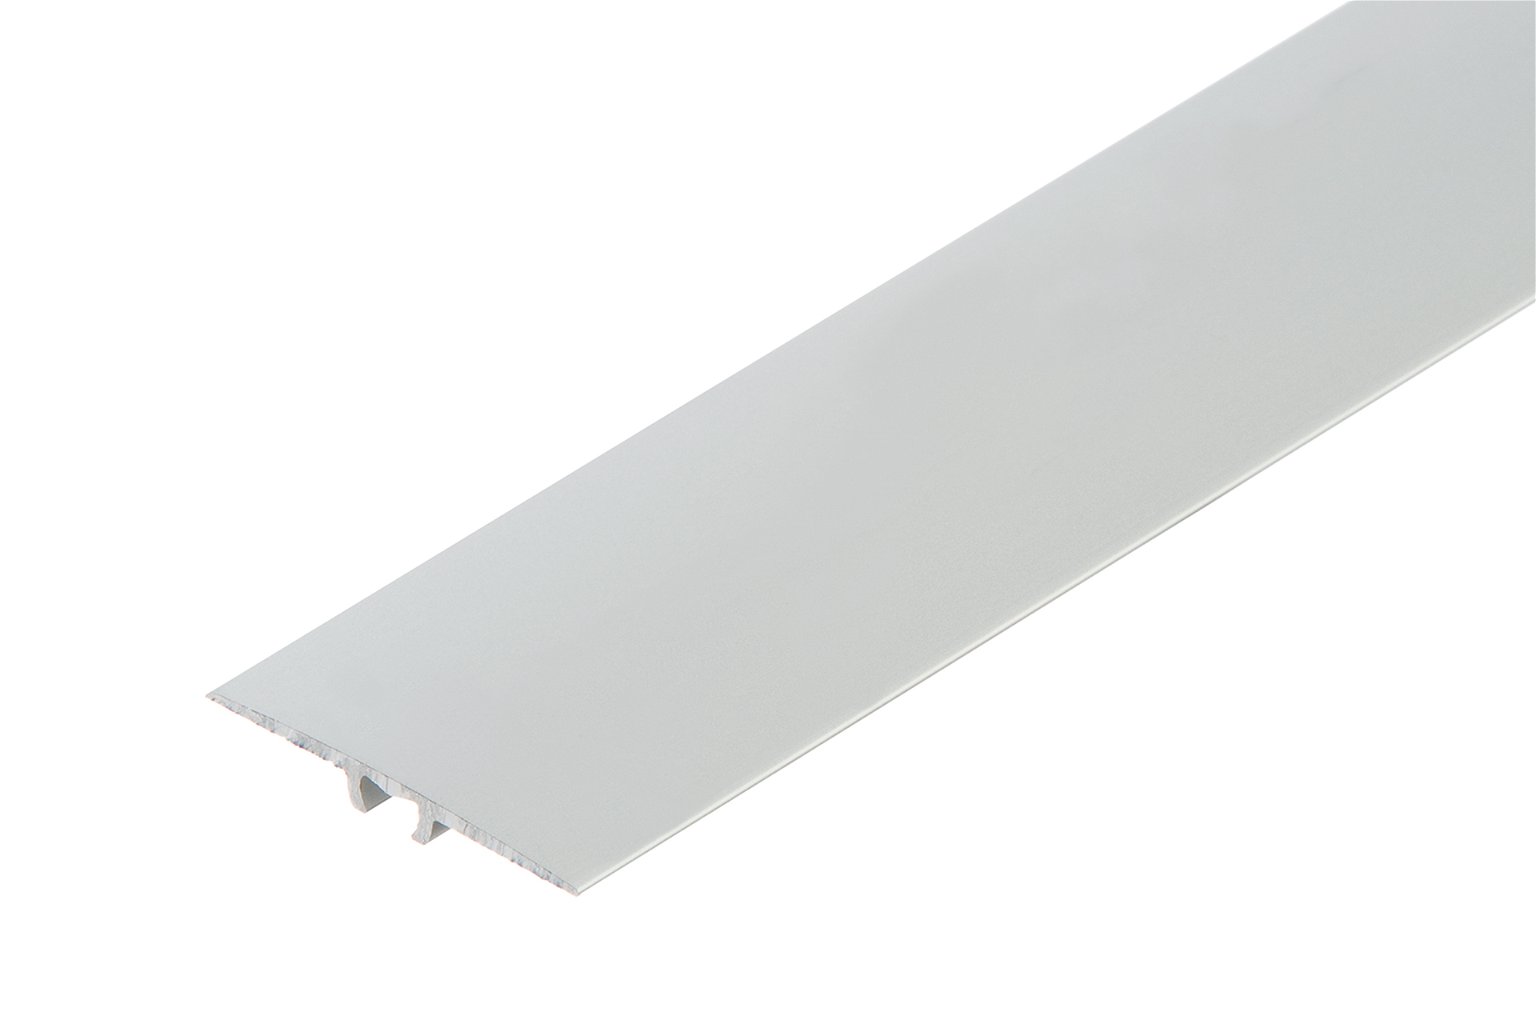 Aliuminė grindų juostelė C0, plokščia, sidabrinės spl., 35 mm pločio, 93 cm ilgio